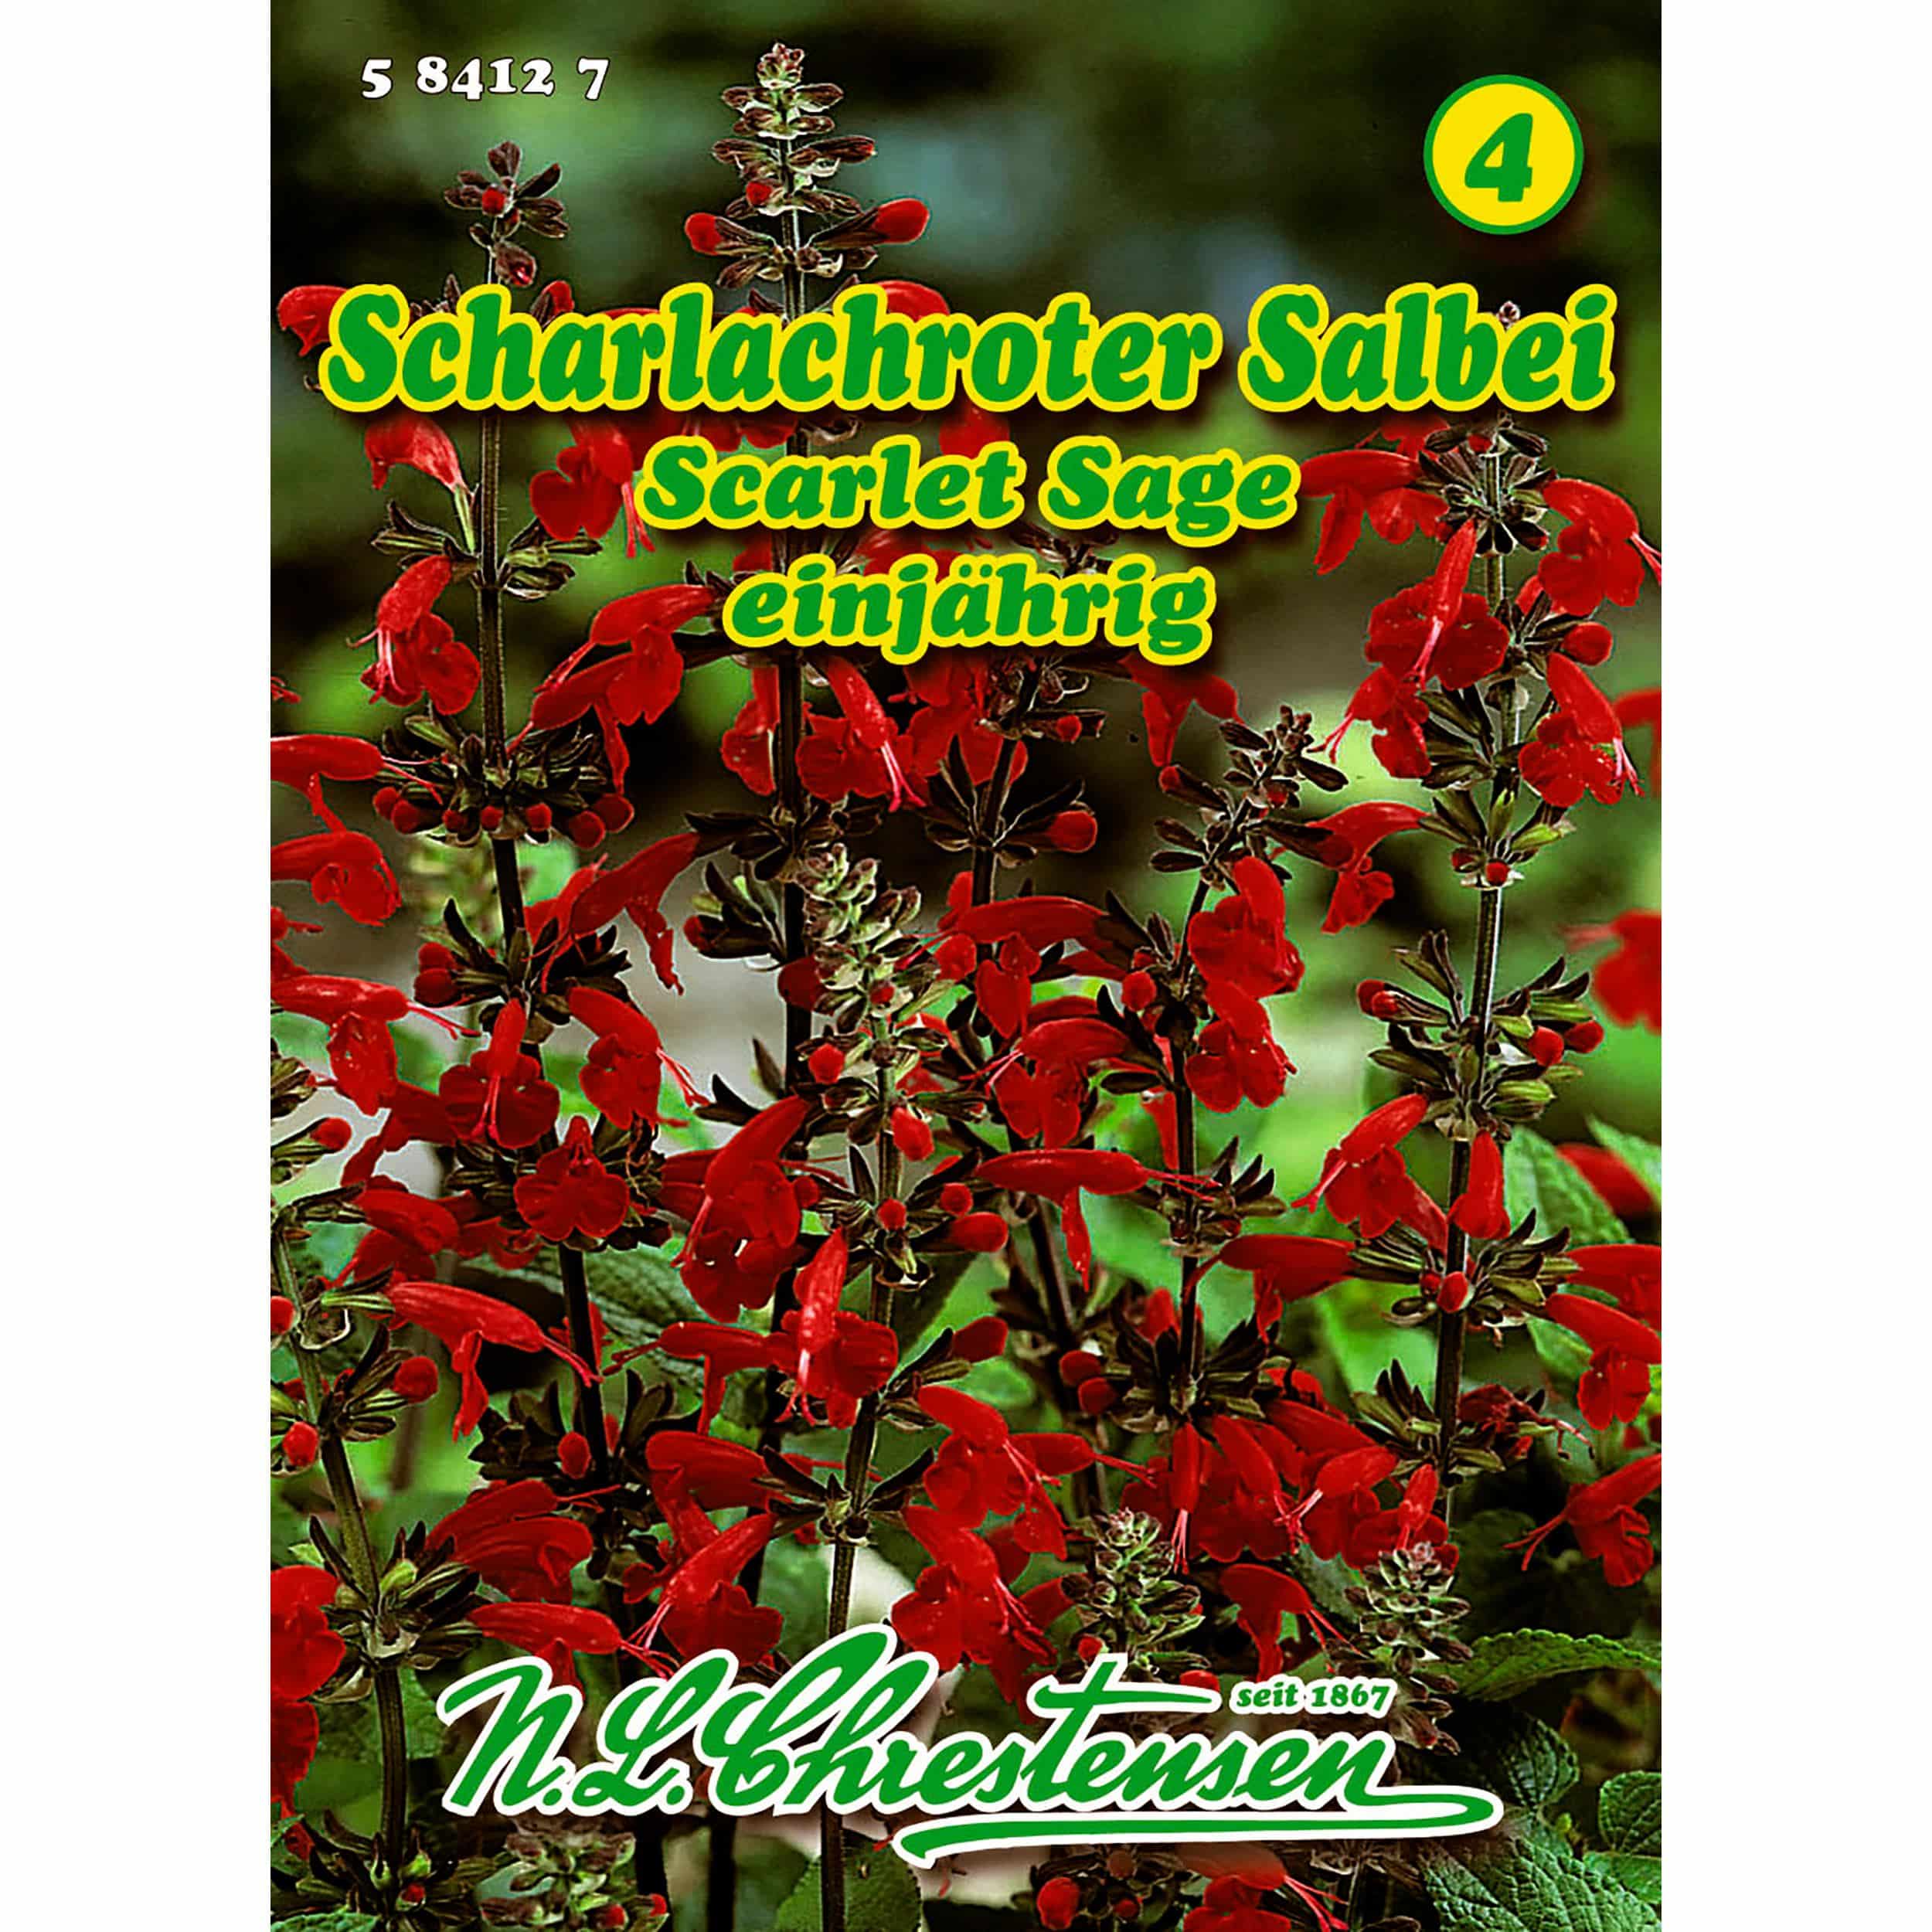 Salvia cocc., Scarlet Sage, Scharlachroter Salbei